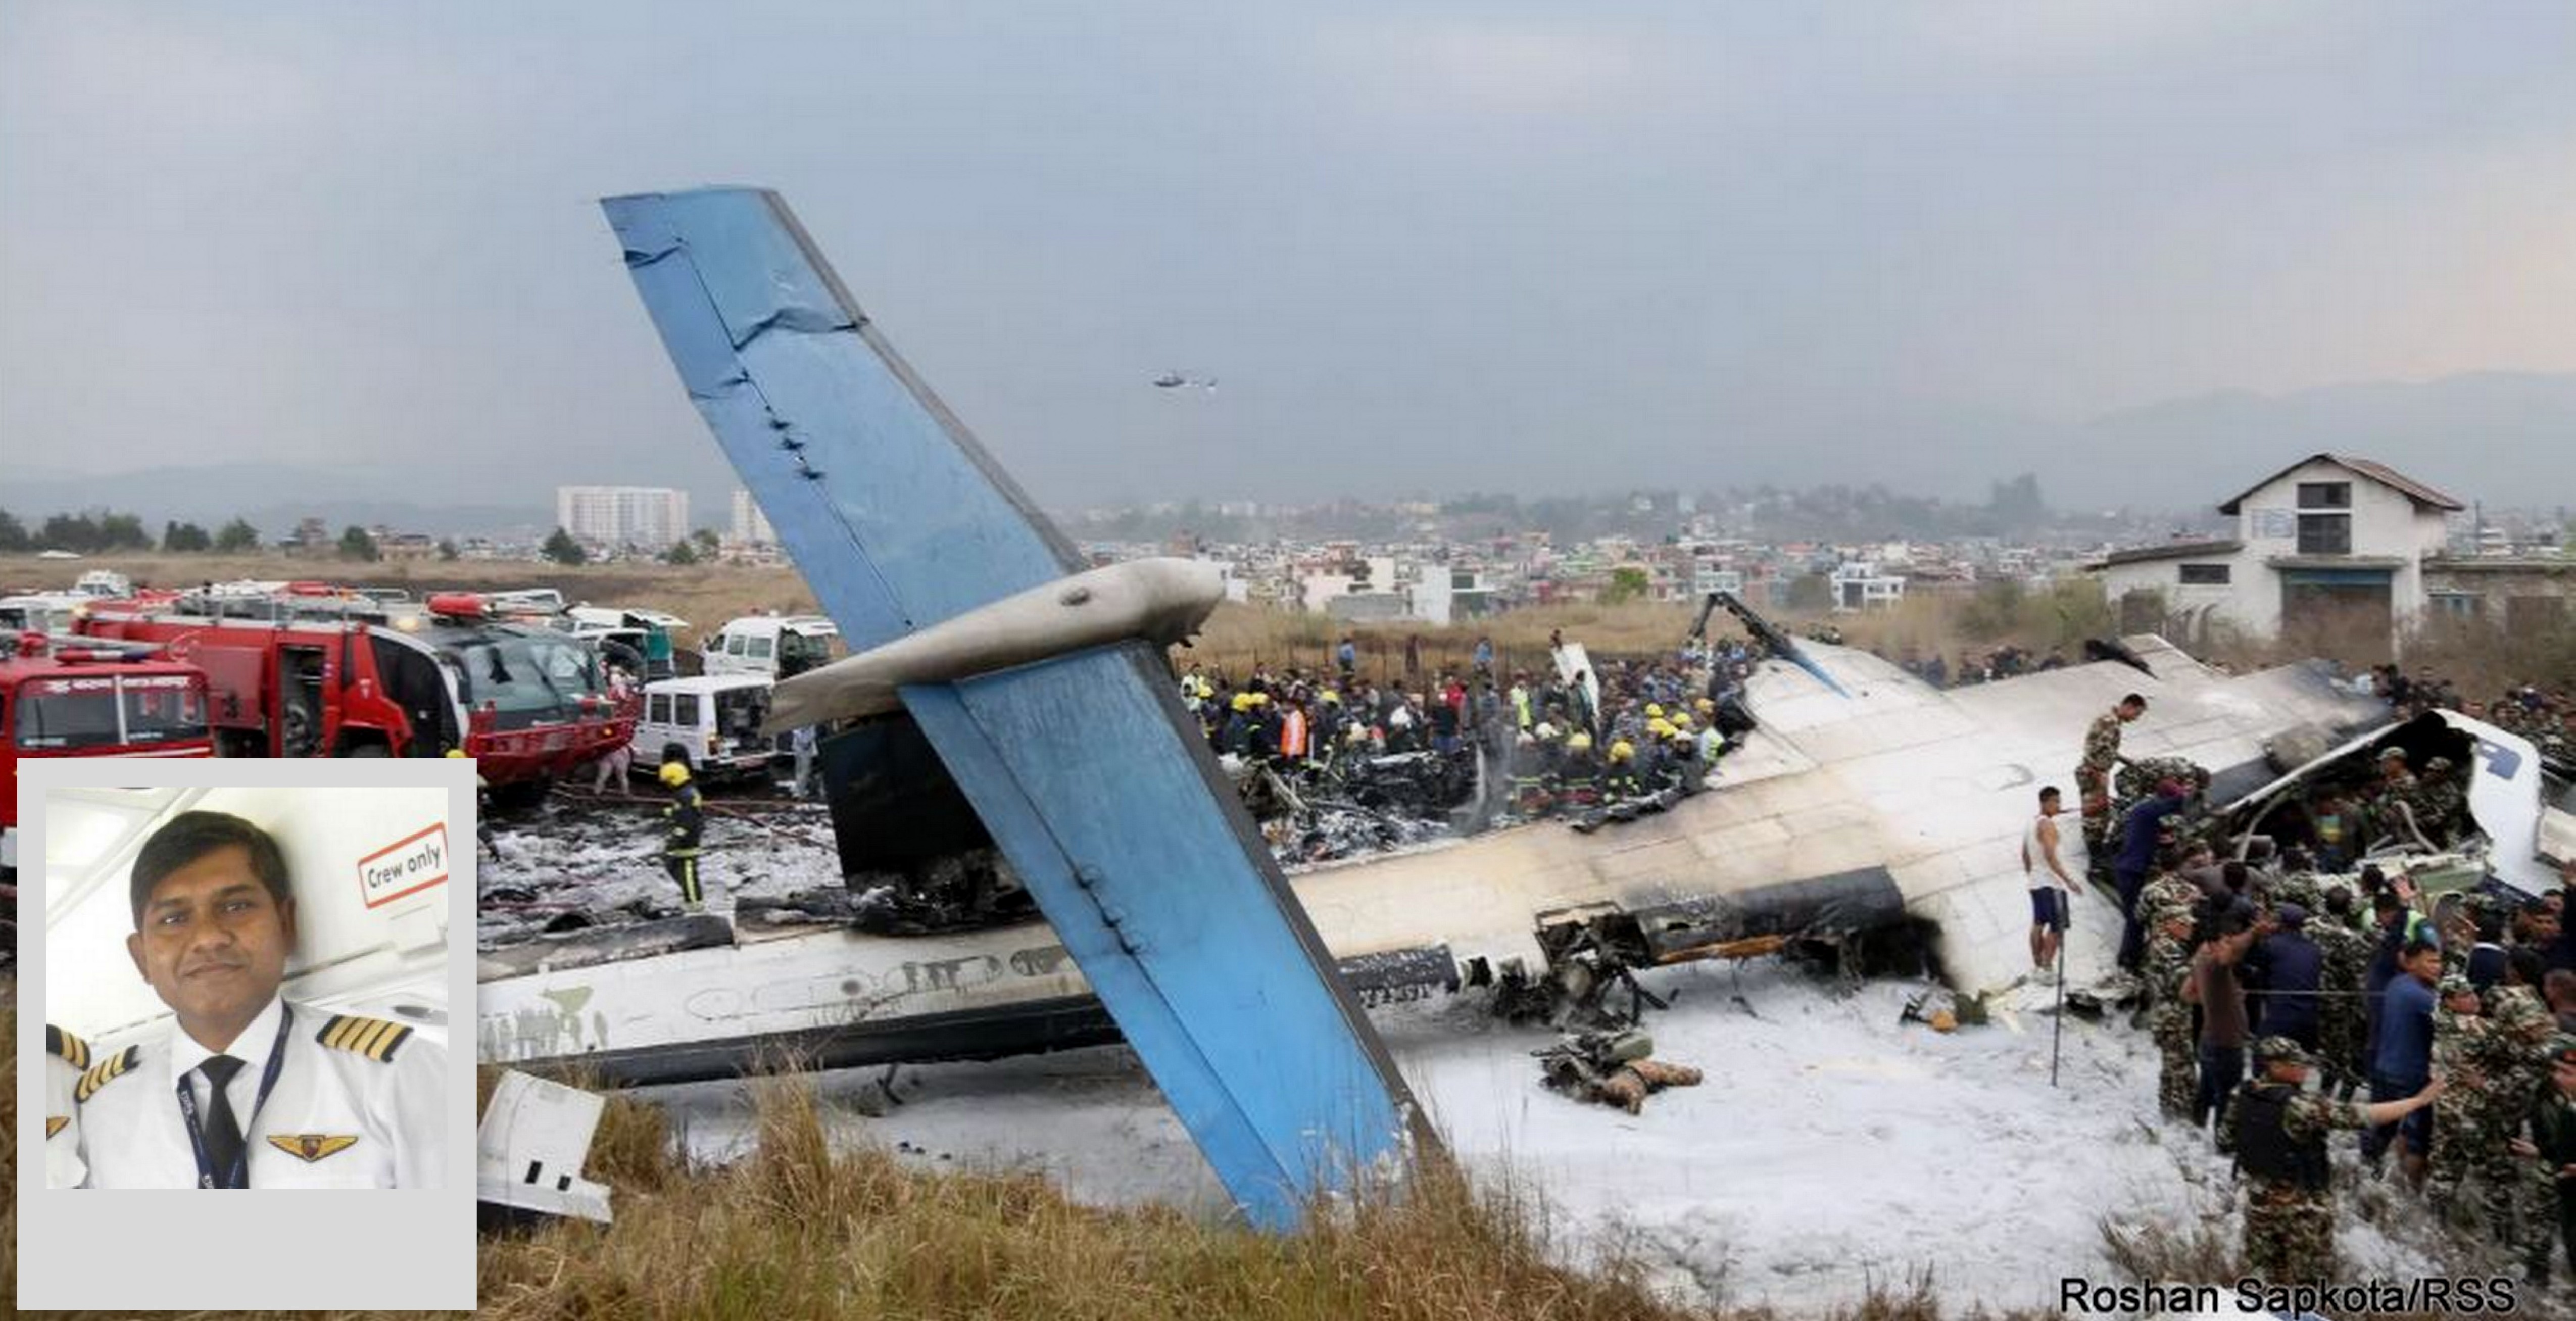 पाइलटकै लापरवाहीले काठमाडौँमा युएस बंगला एयर विमान दुर्घटना भएको प्रतिवेदन, 'पाइलट तनावमा थिए'